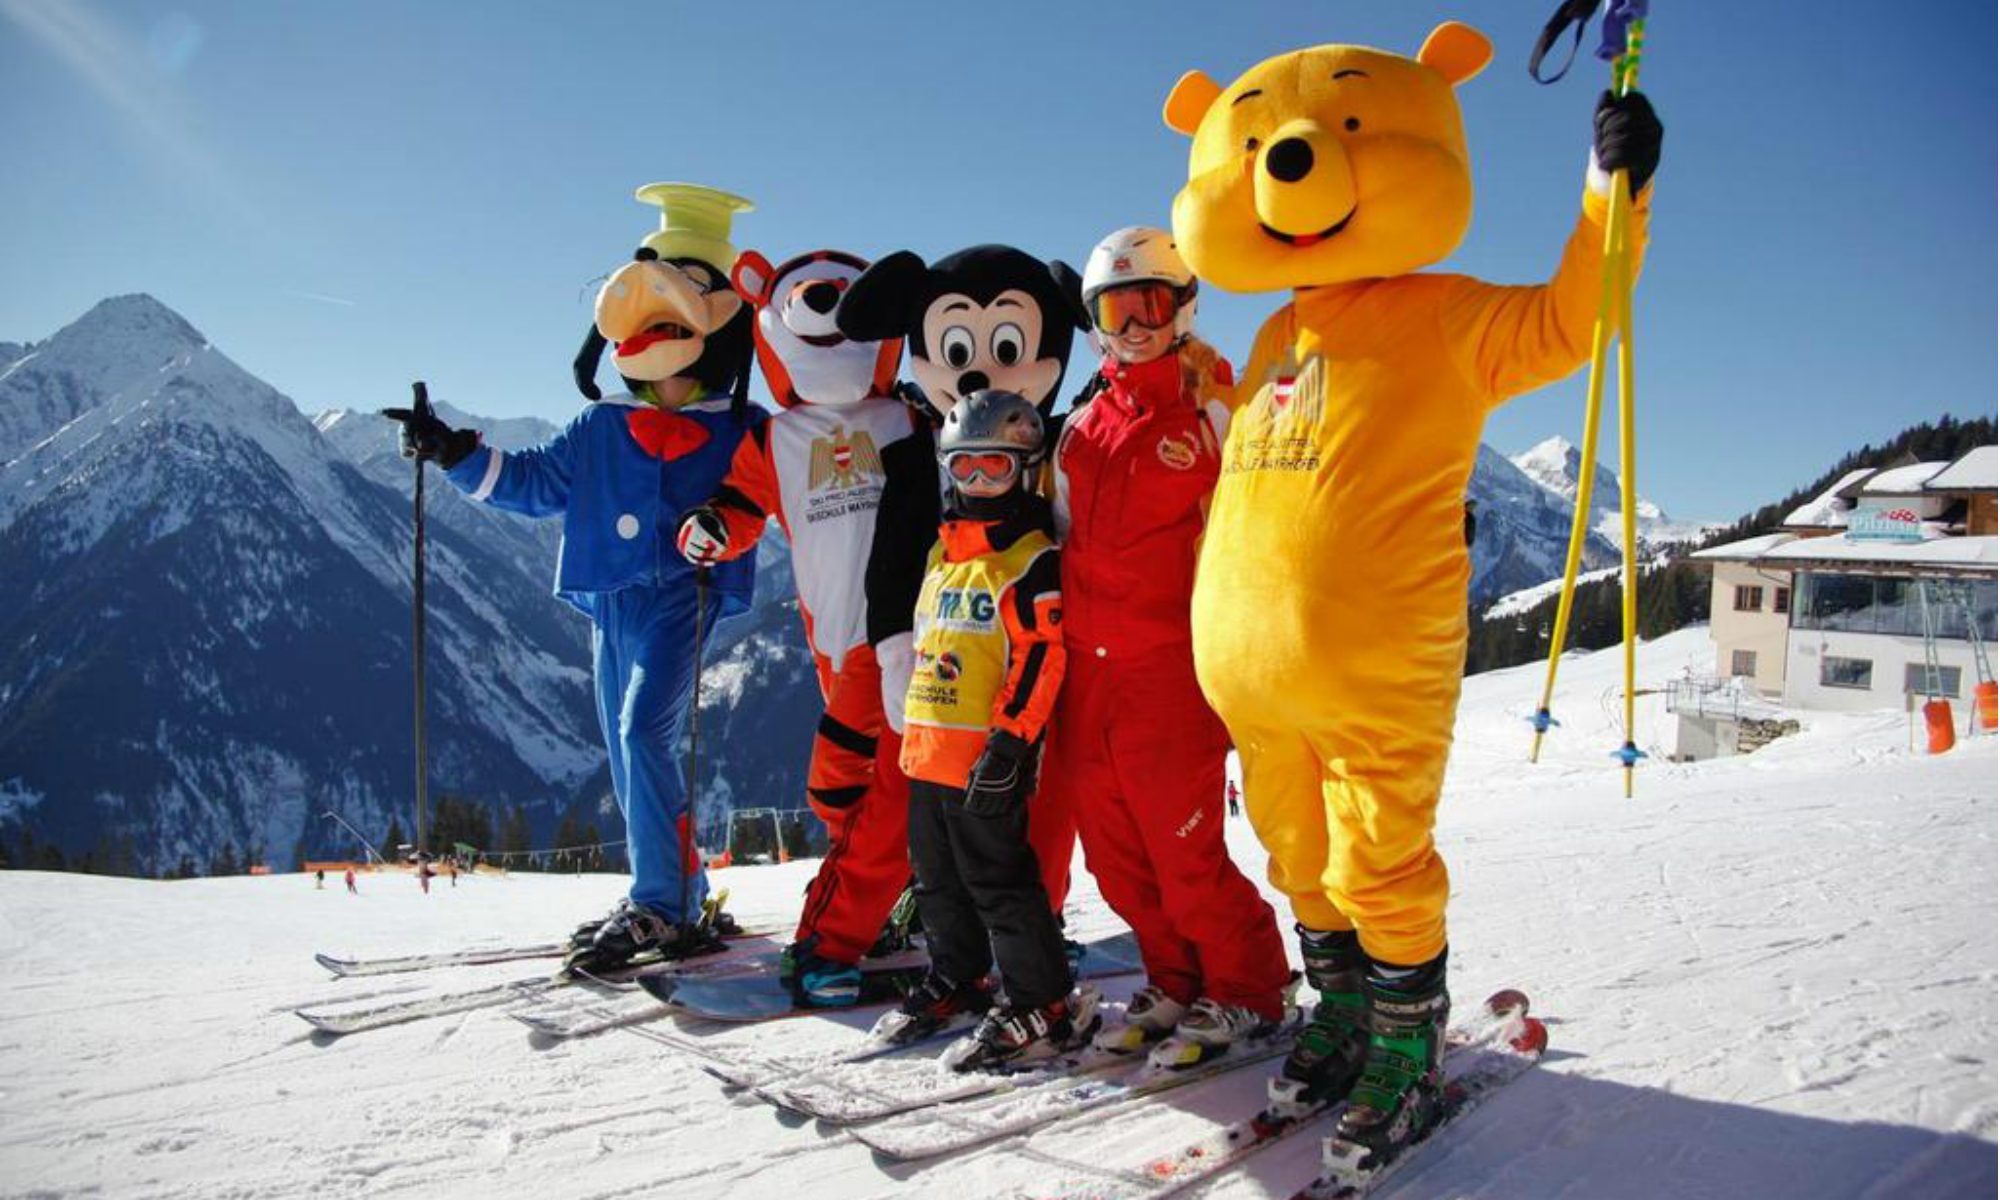 4 Maskottchen der Skischule Mayrhofen Ski Pro Austria stehen mit einer Skilehrerin und einem Kind auf einer sonnigen Piste im Skigebiet Mayrhofen.